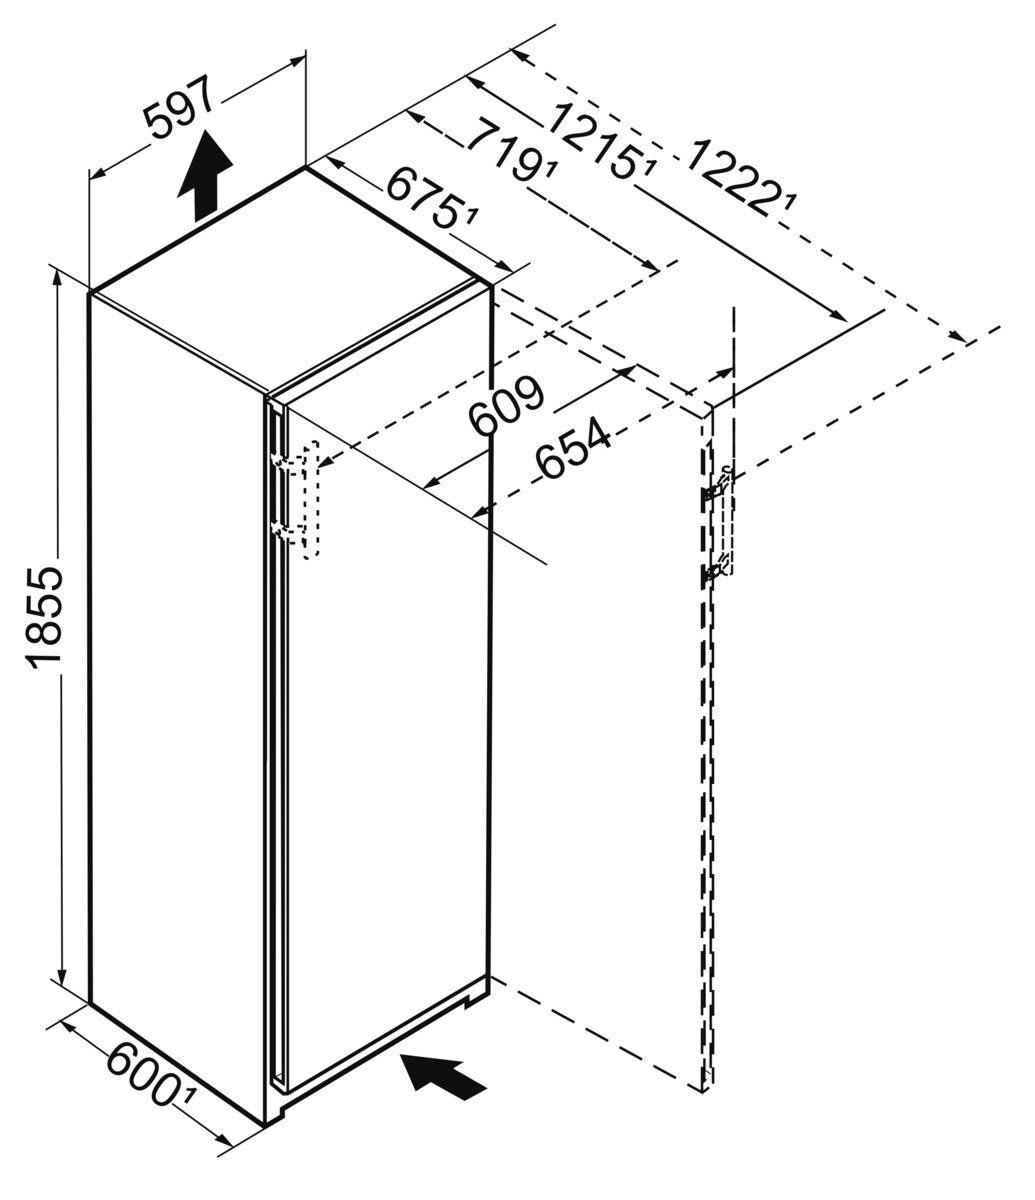 Liebherr Kühlschrank RBbsc 5250-20, 185,5 59,7 hoch, cm cm mit BioFresh breit